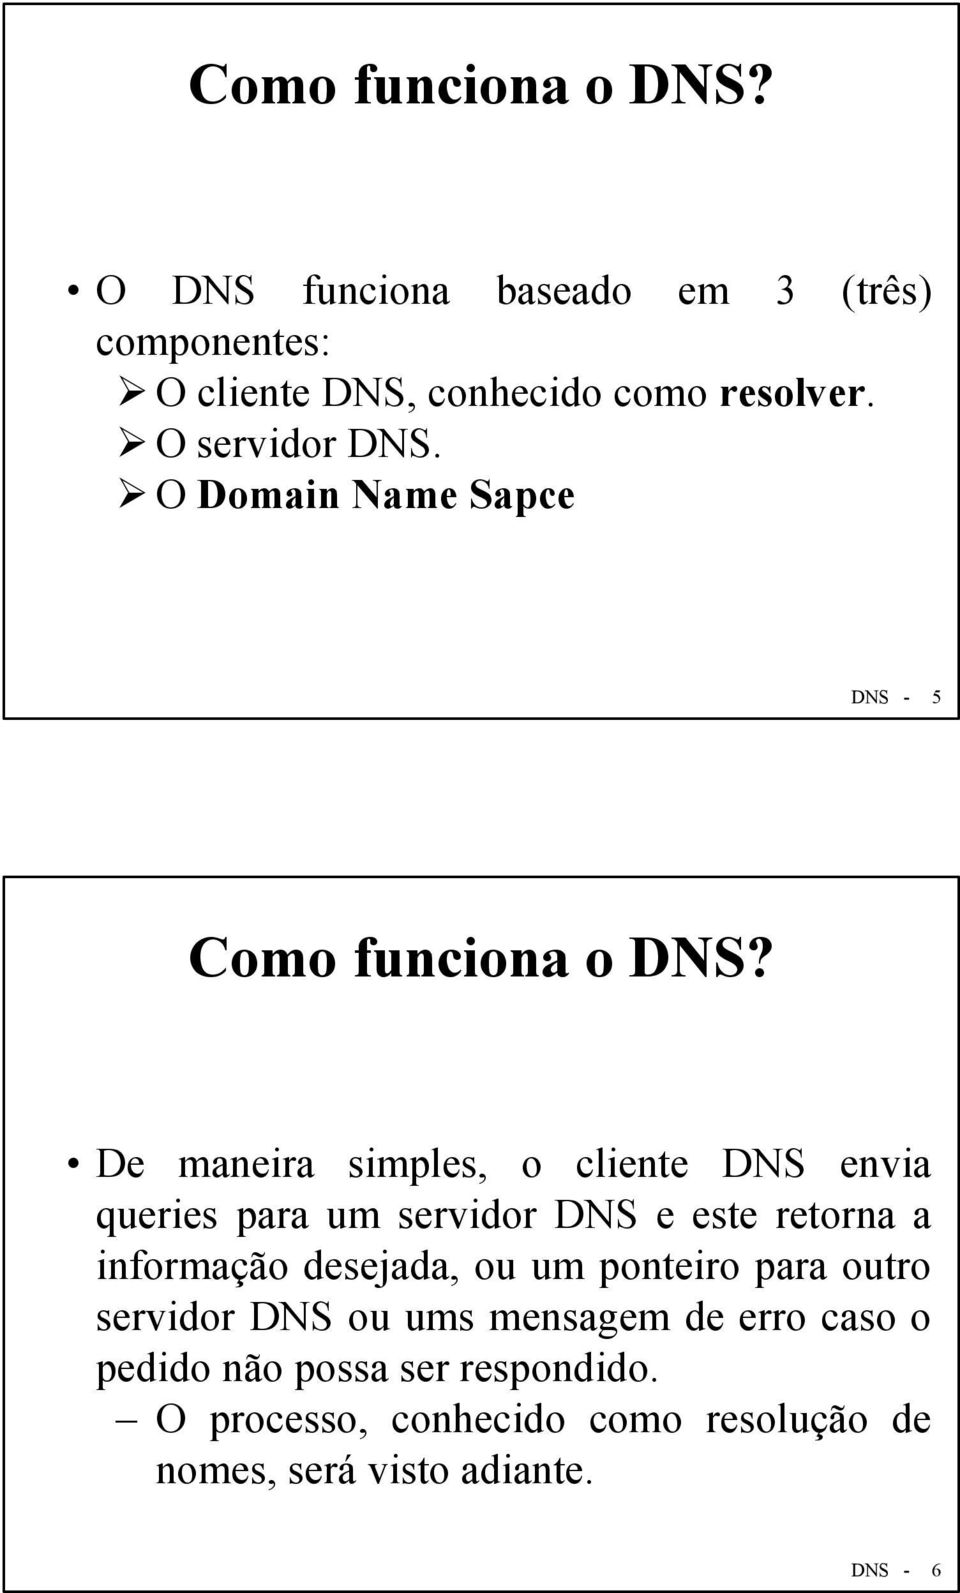 De maneira simples, o cliente DNS envia queries para um servidor DNS e este retorna a informação desejada, ou um